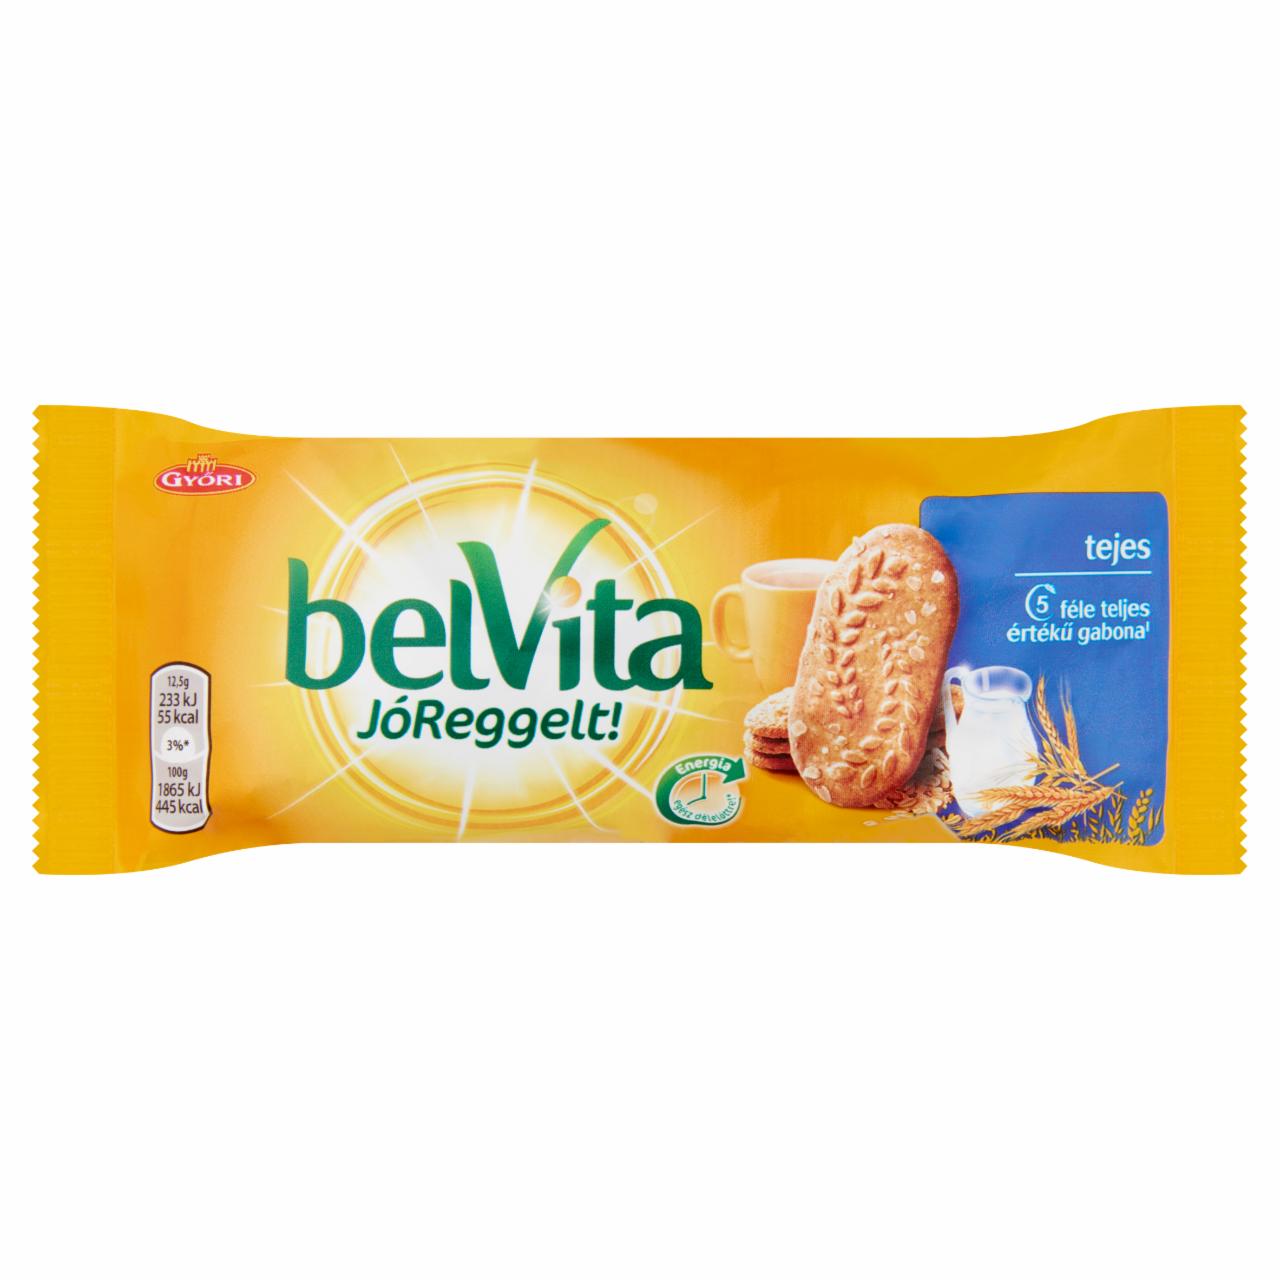 Képek - belVita JóReggelt! tejes, gabonás, omlós keksz 50 g